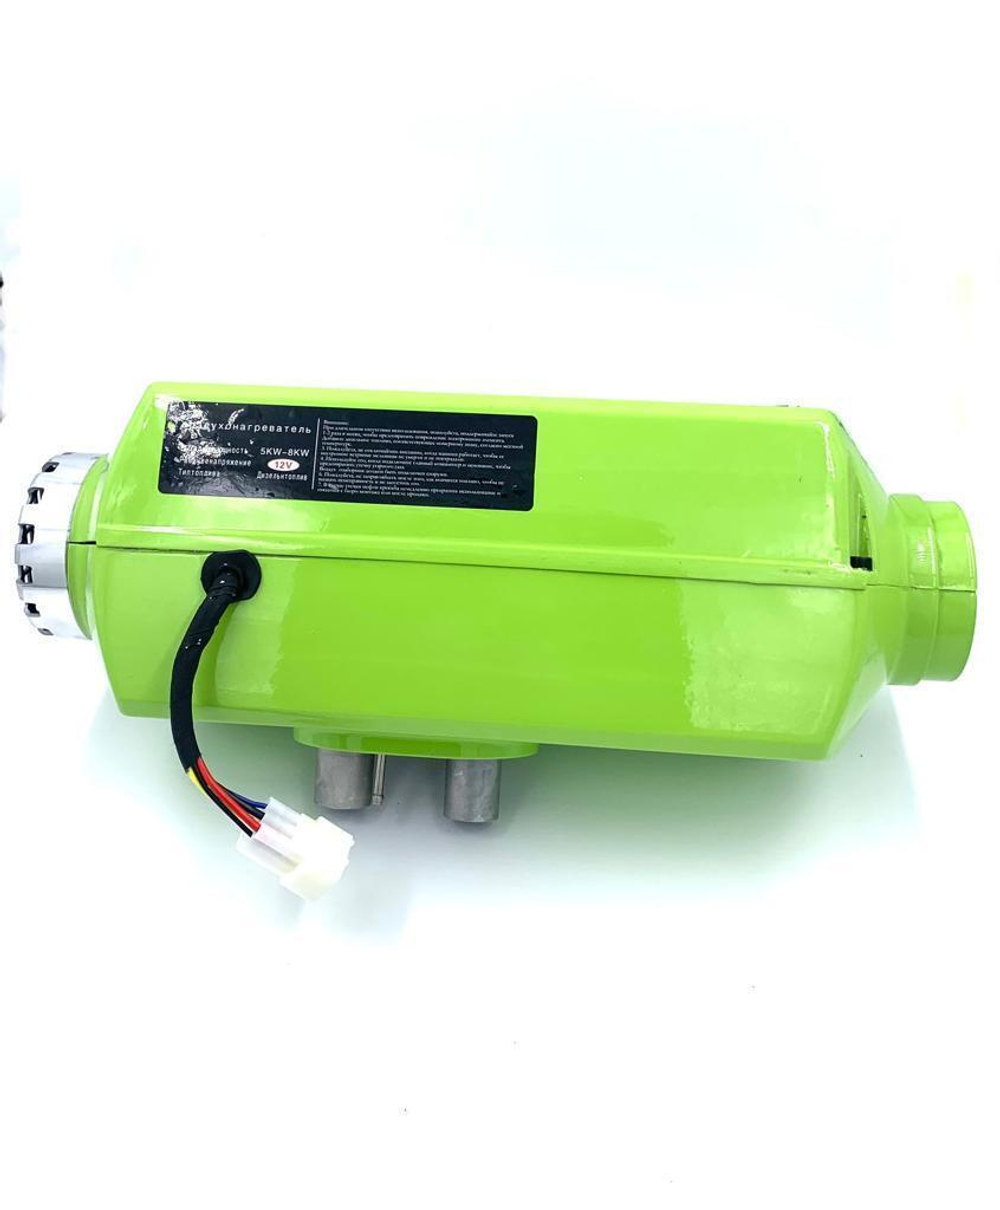 Автономный отопитель дизельный 24В 5-8кВт Satdpro автономка / сухой фен / воздушный обогреватель